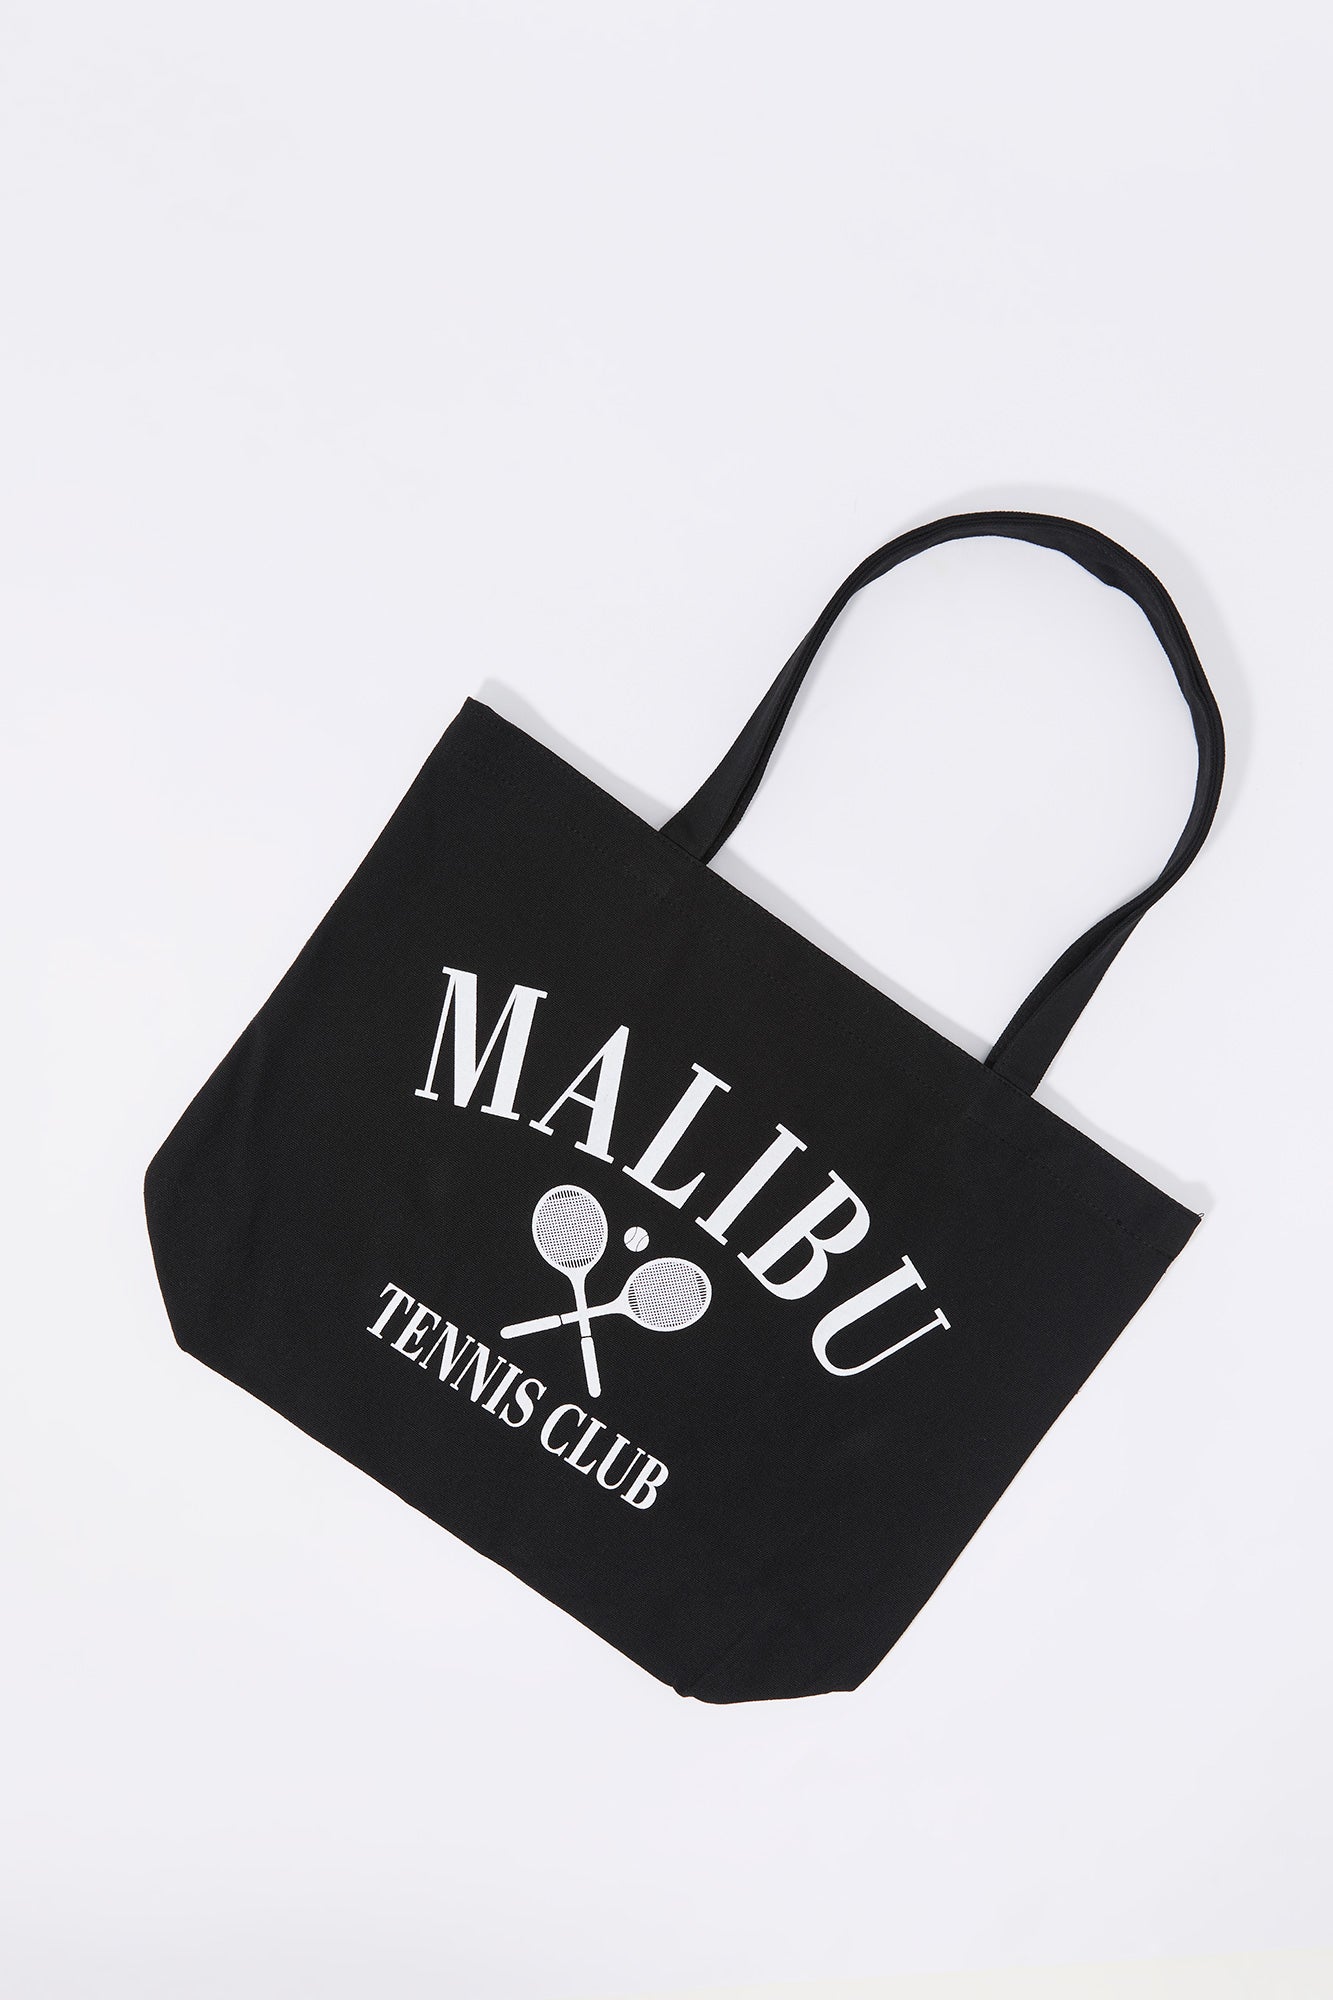 Malibu Tennis Club Graphic Tote Bag